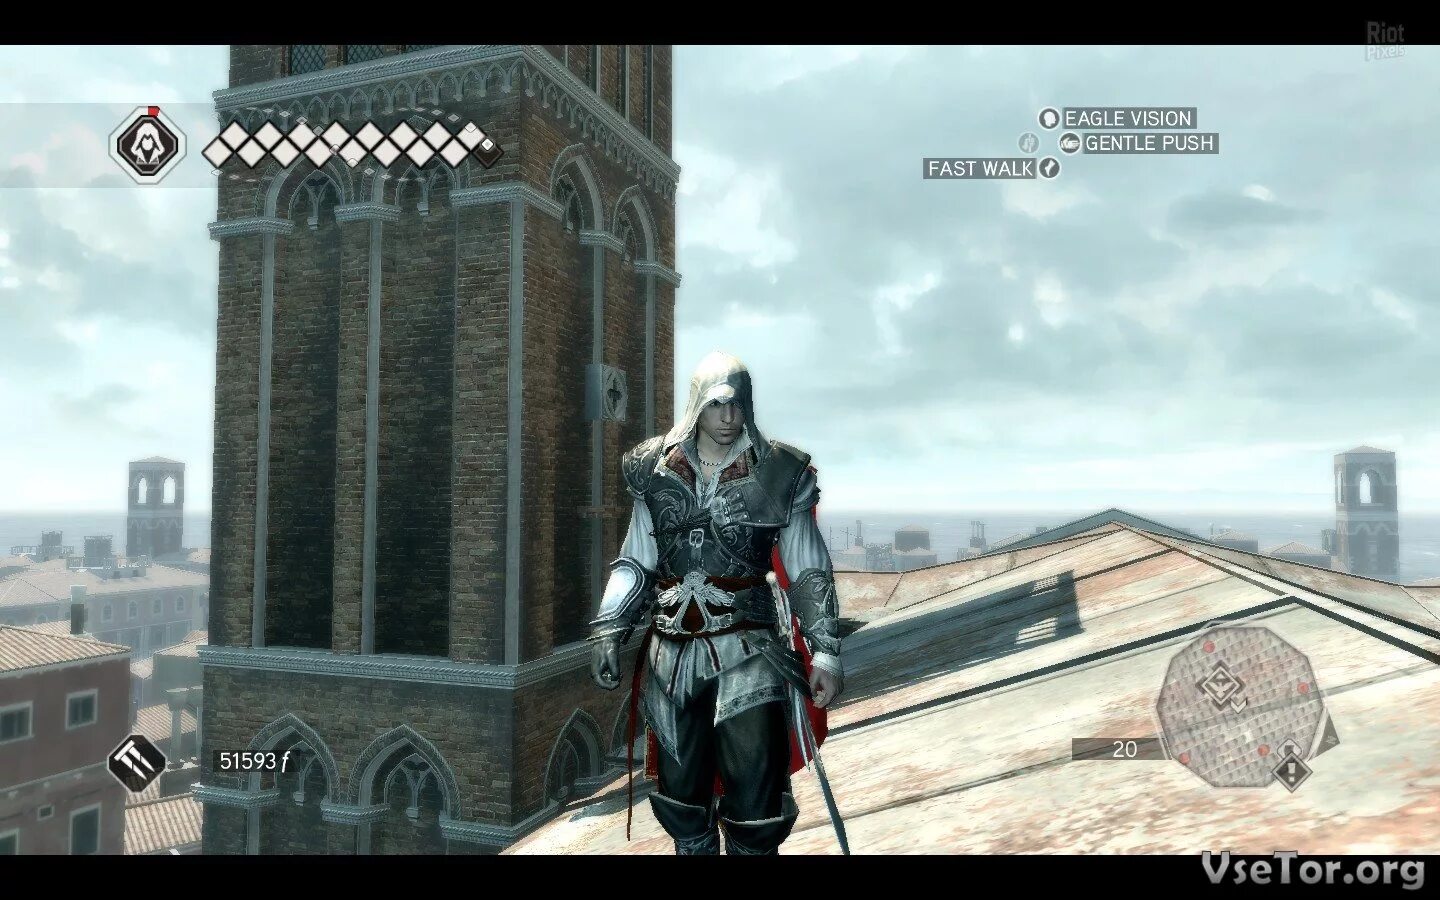 Скриншот управления ассасин Крид 2. Открытый мир в ассасин Крид 2. Дефолтное управление в Assassins Creed 2. Assassin's Creed 2 раскладка клавиатуры.